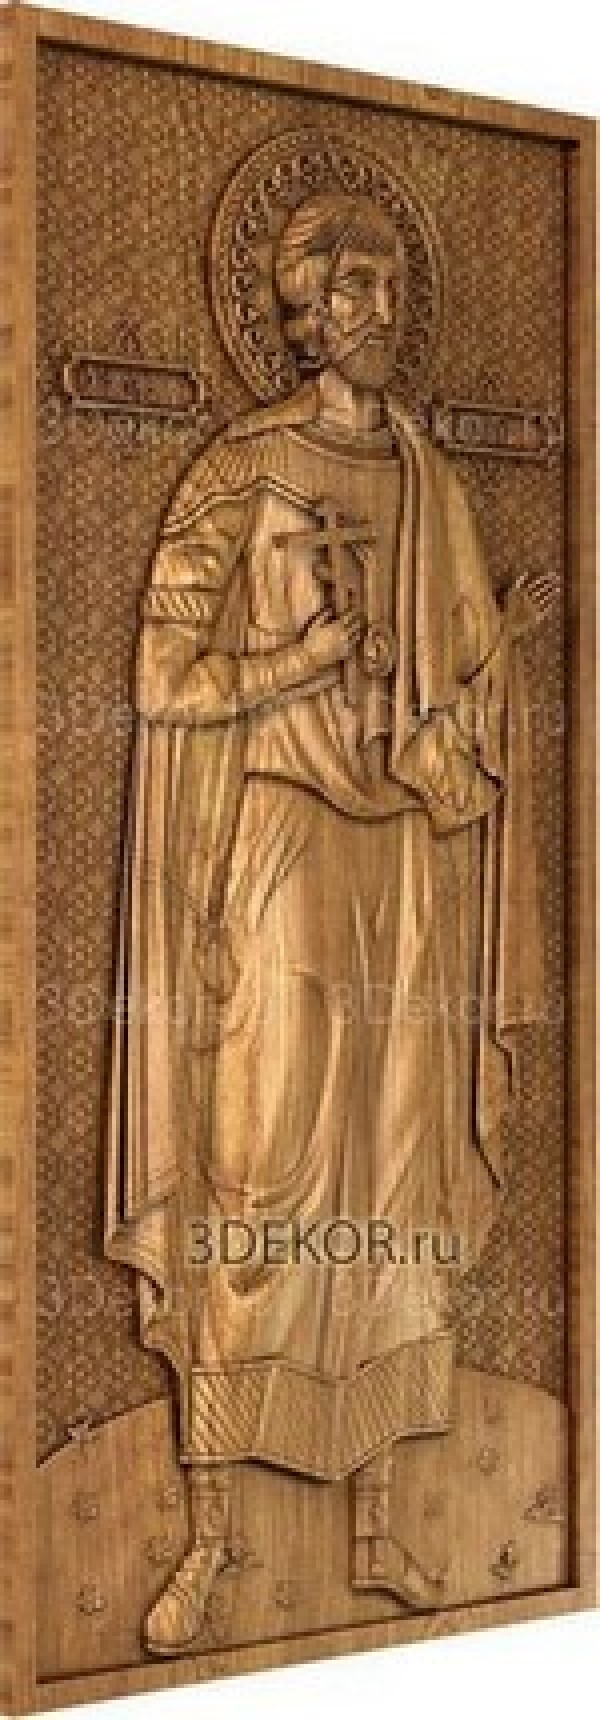 Икона на дереве Святой мученик Анатолий Никейский